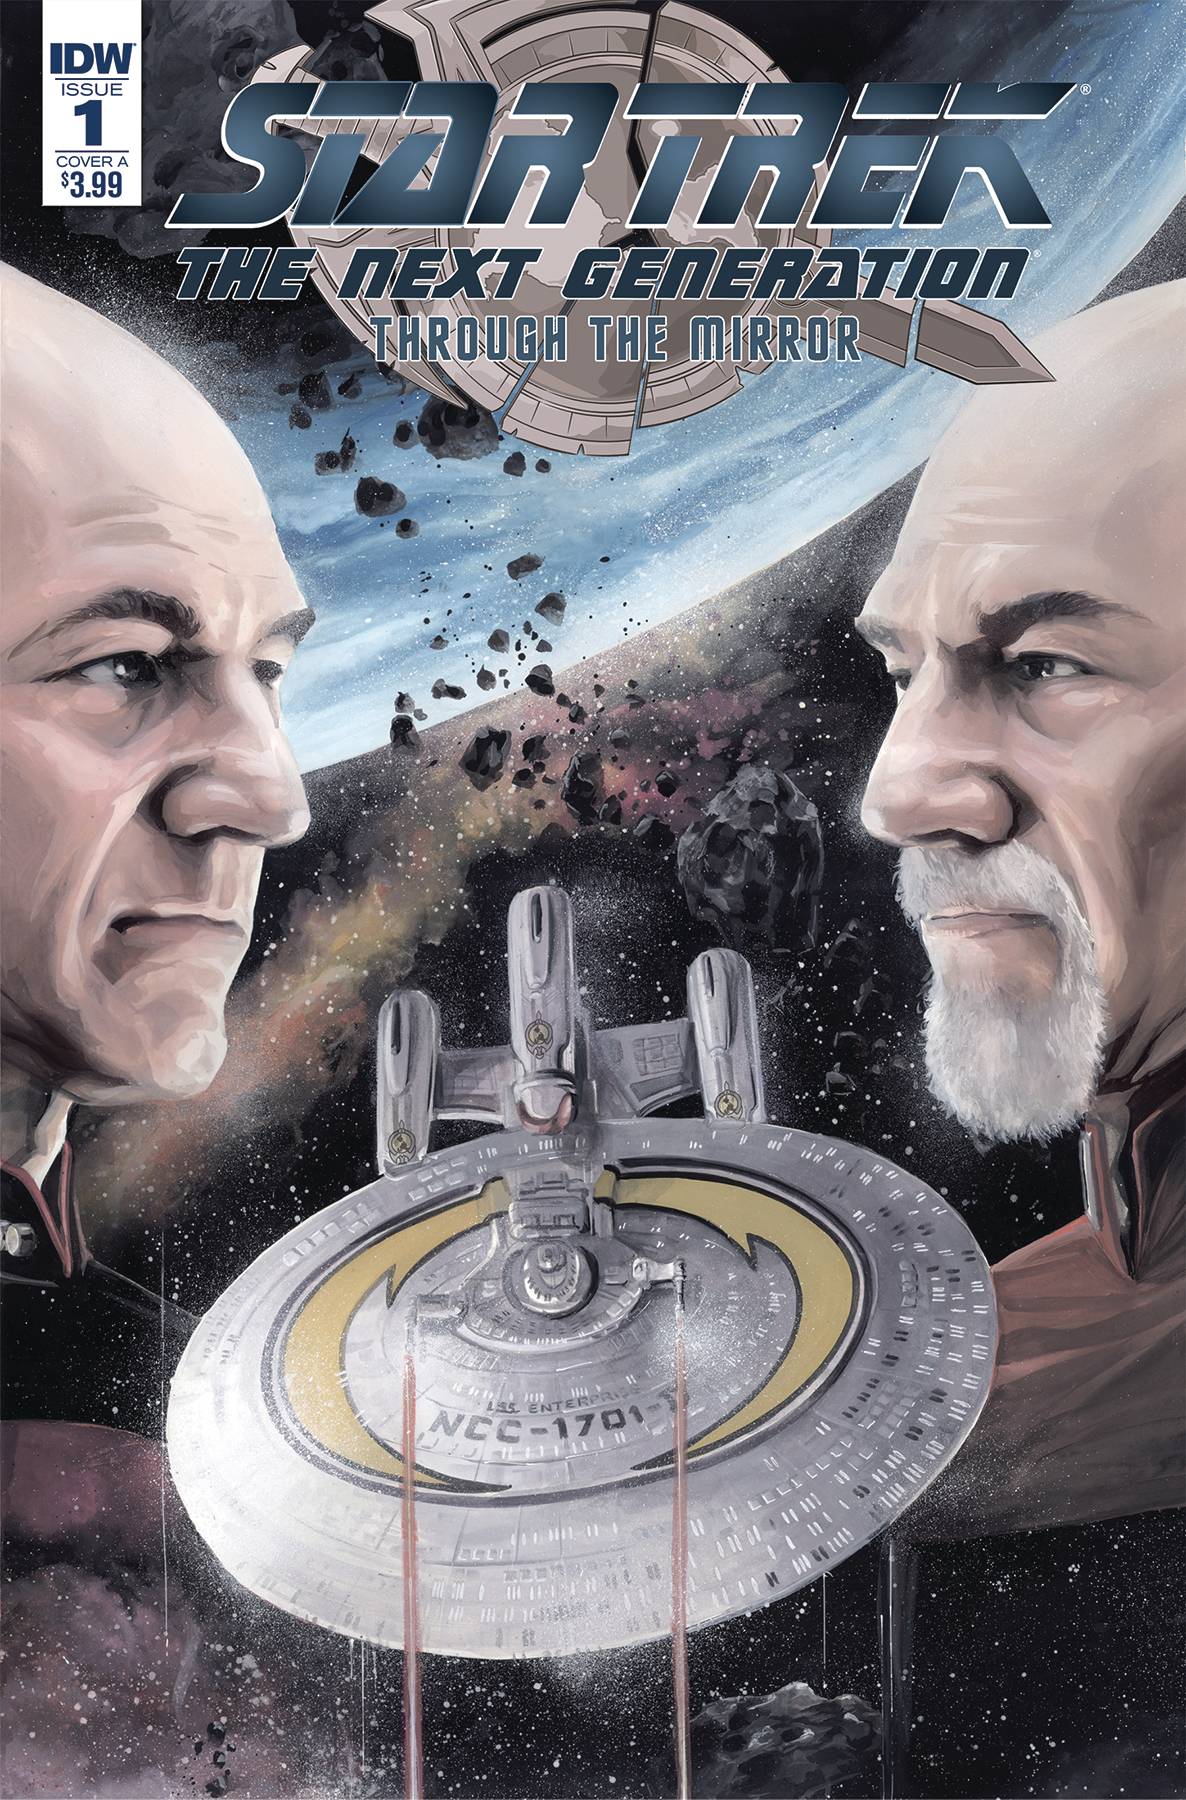 Star Trek Tng Through The Mirror #1 Cover A Woodward